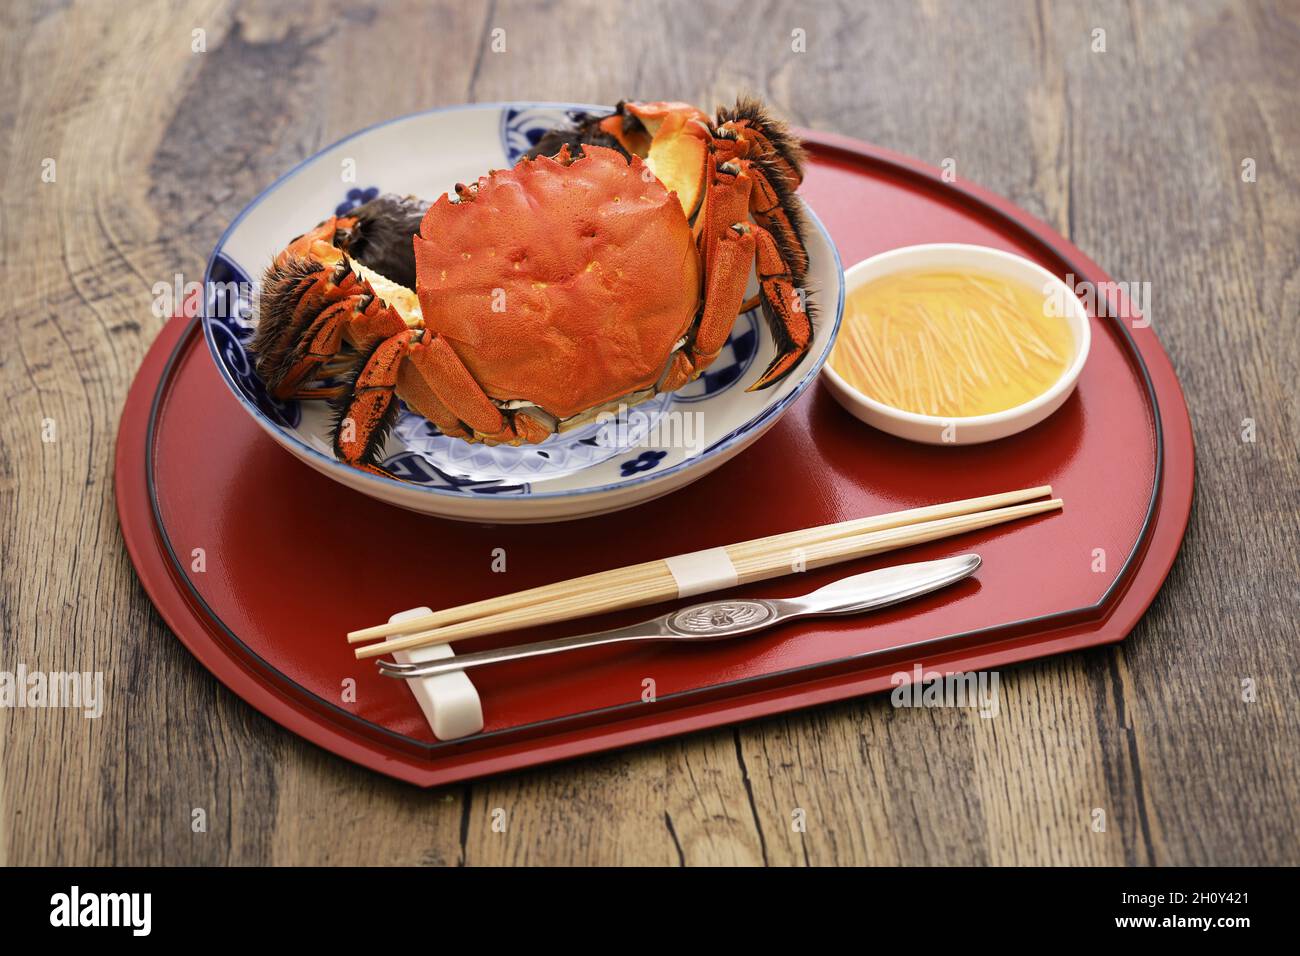 Crabe manique bouilli.Ce crabe est le même genre de crabe que le crabe poilu de Shanghai. Banque D'Images